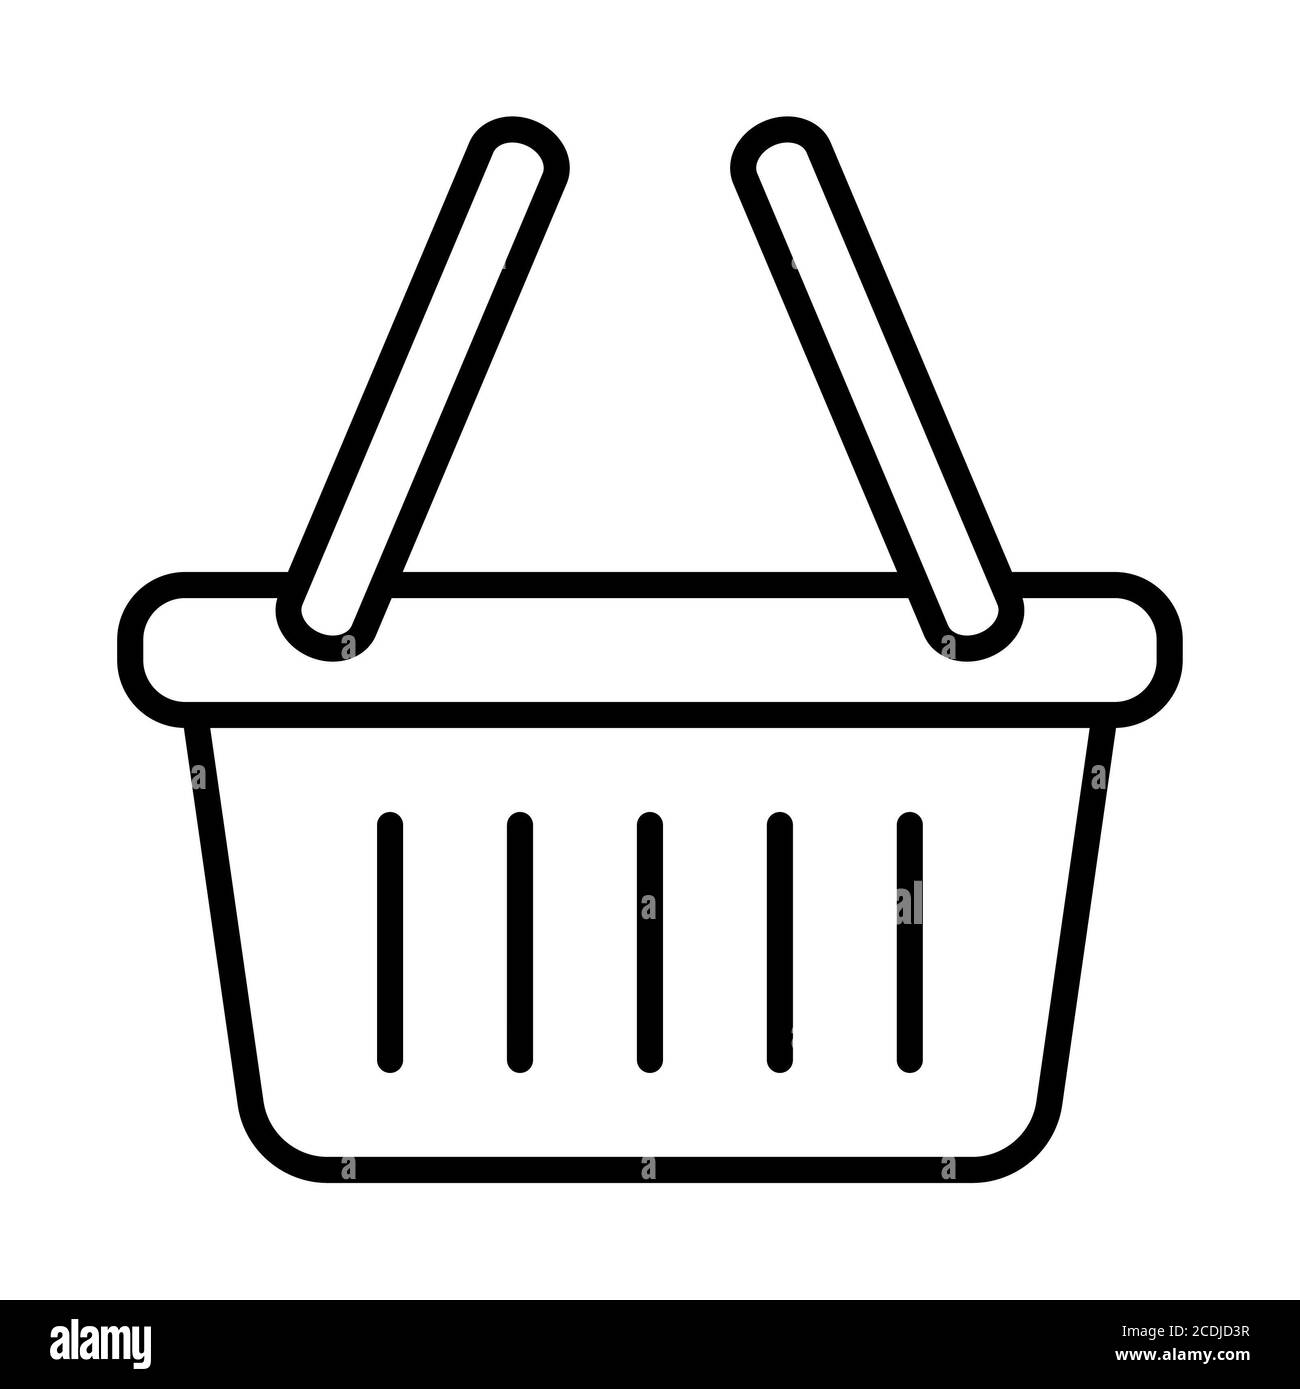 Panier de courses icon Banque d'images noir et blanc - Alamy